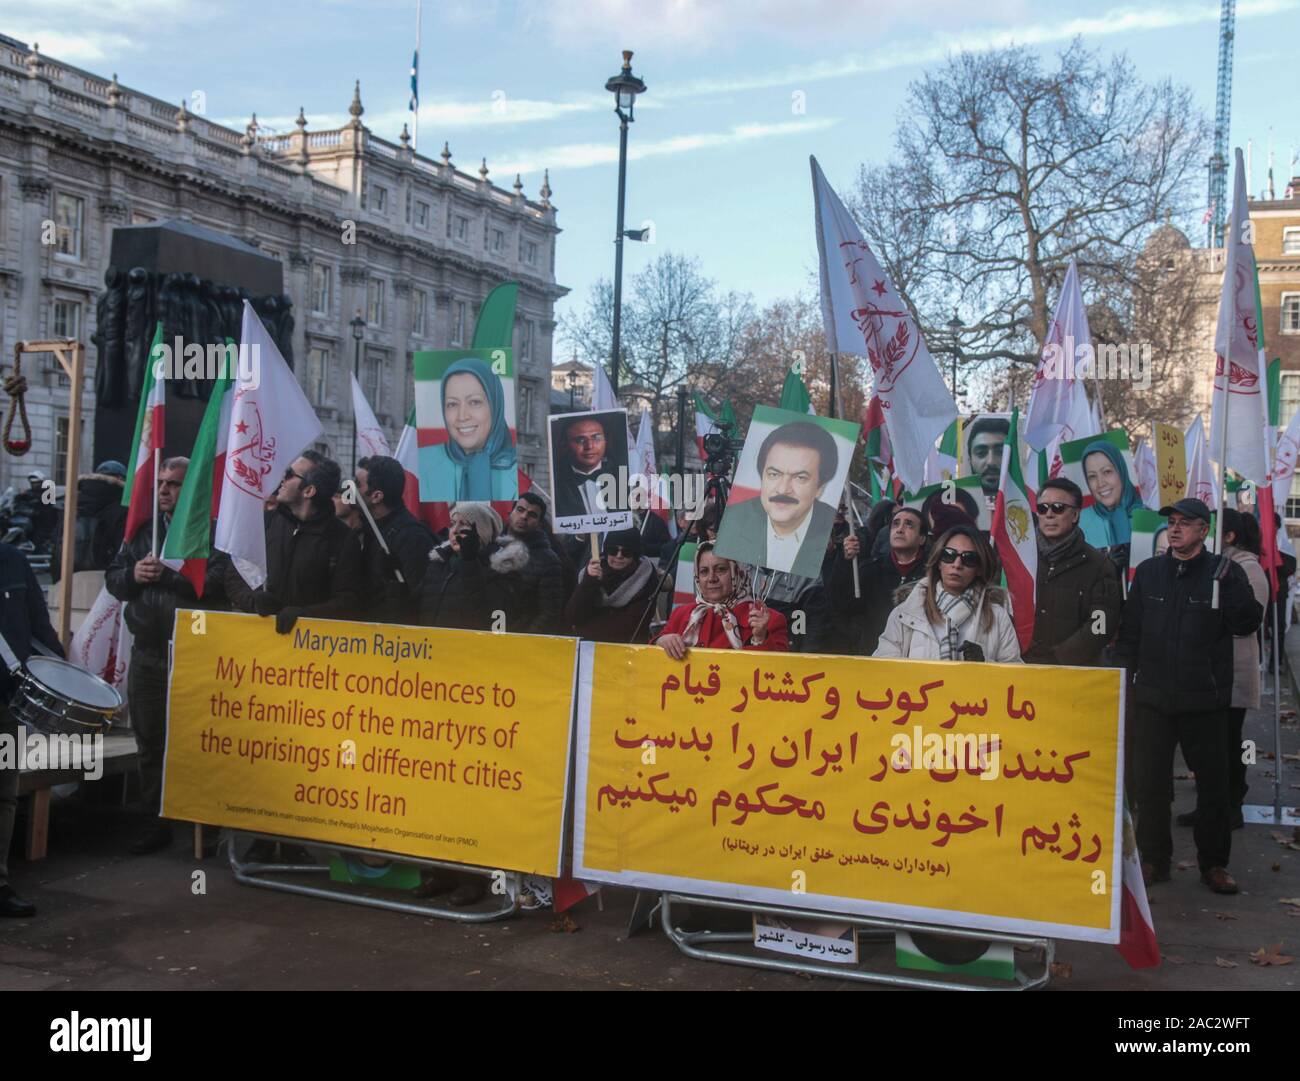 London, Großbritannien. 30 Nov, 2019. Die Anglo-iranischen Gemeinschaften in Großbritannien und Unterstützer des Nationalen Widerstandsrats Iran (NWRI) eine Kundgebung abhielten gegenüber Downing Street zur Unterstützung der laufenden Proteste im Iran, die in einen Aufstand gegen das klerikale Regime gedreht haben. Über 450. Die Demonstranten getötet und 4000 verletzt, wenn der FTP- und Sicherheitskräfte das Feuer auf sie eröffnet. Mehr als 10.000 verhaftet wurde, Poster mit Fotos von Getöteten und weitere Kennzeichnungen auf der heutigen Kundgebung. Paul Quezada-Neiman/Alamy Live News Credit: Paul Quezada-Neiman/Alamy leben Nachrichten Stockfoto